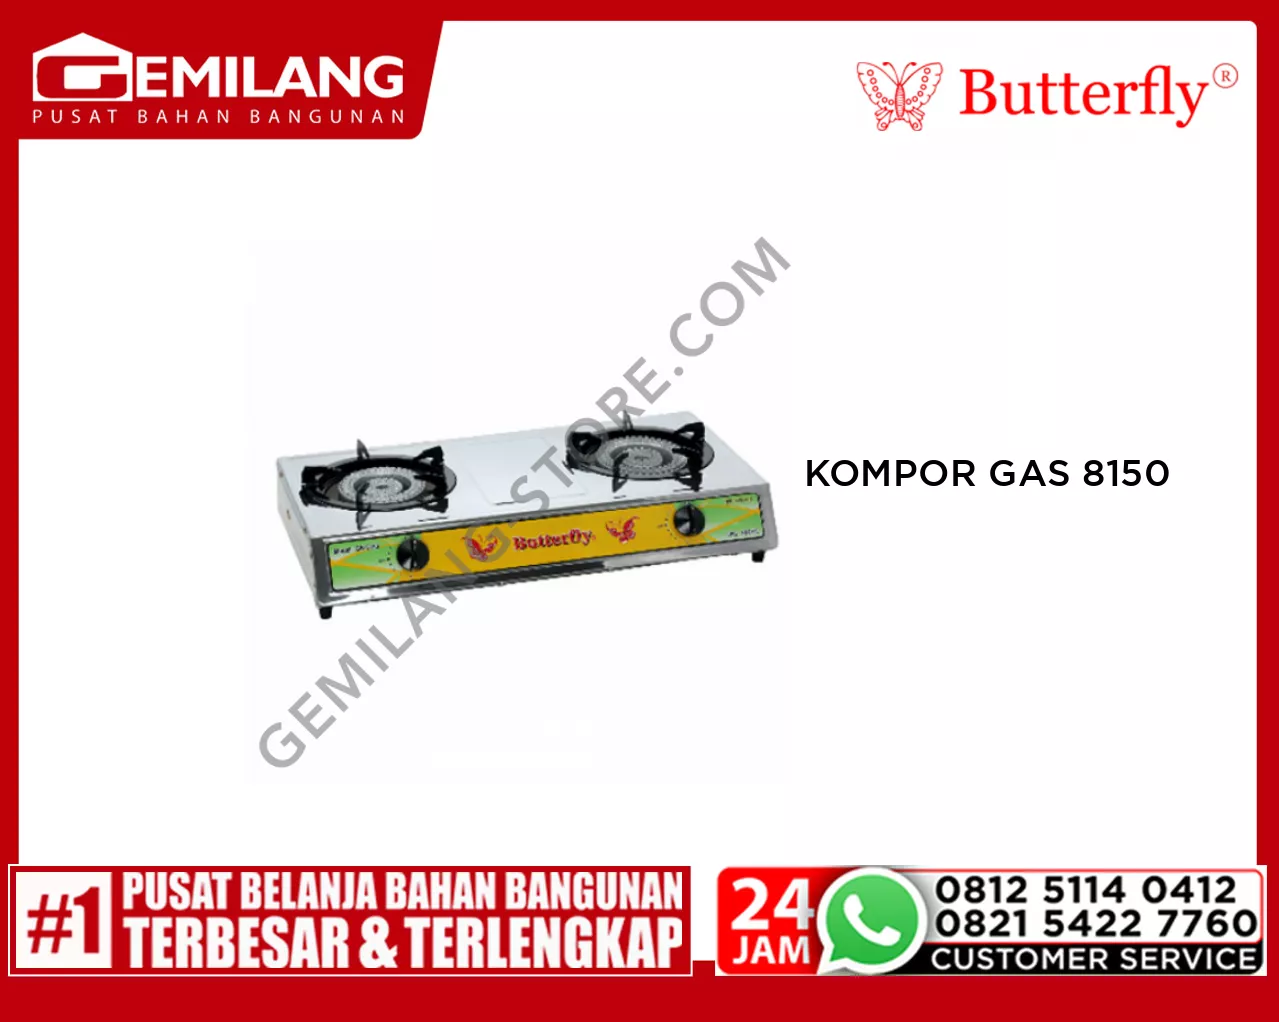 BUTTERFLY KOMPOR GAS 8150